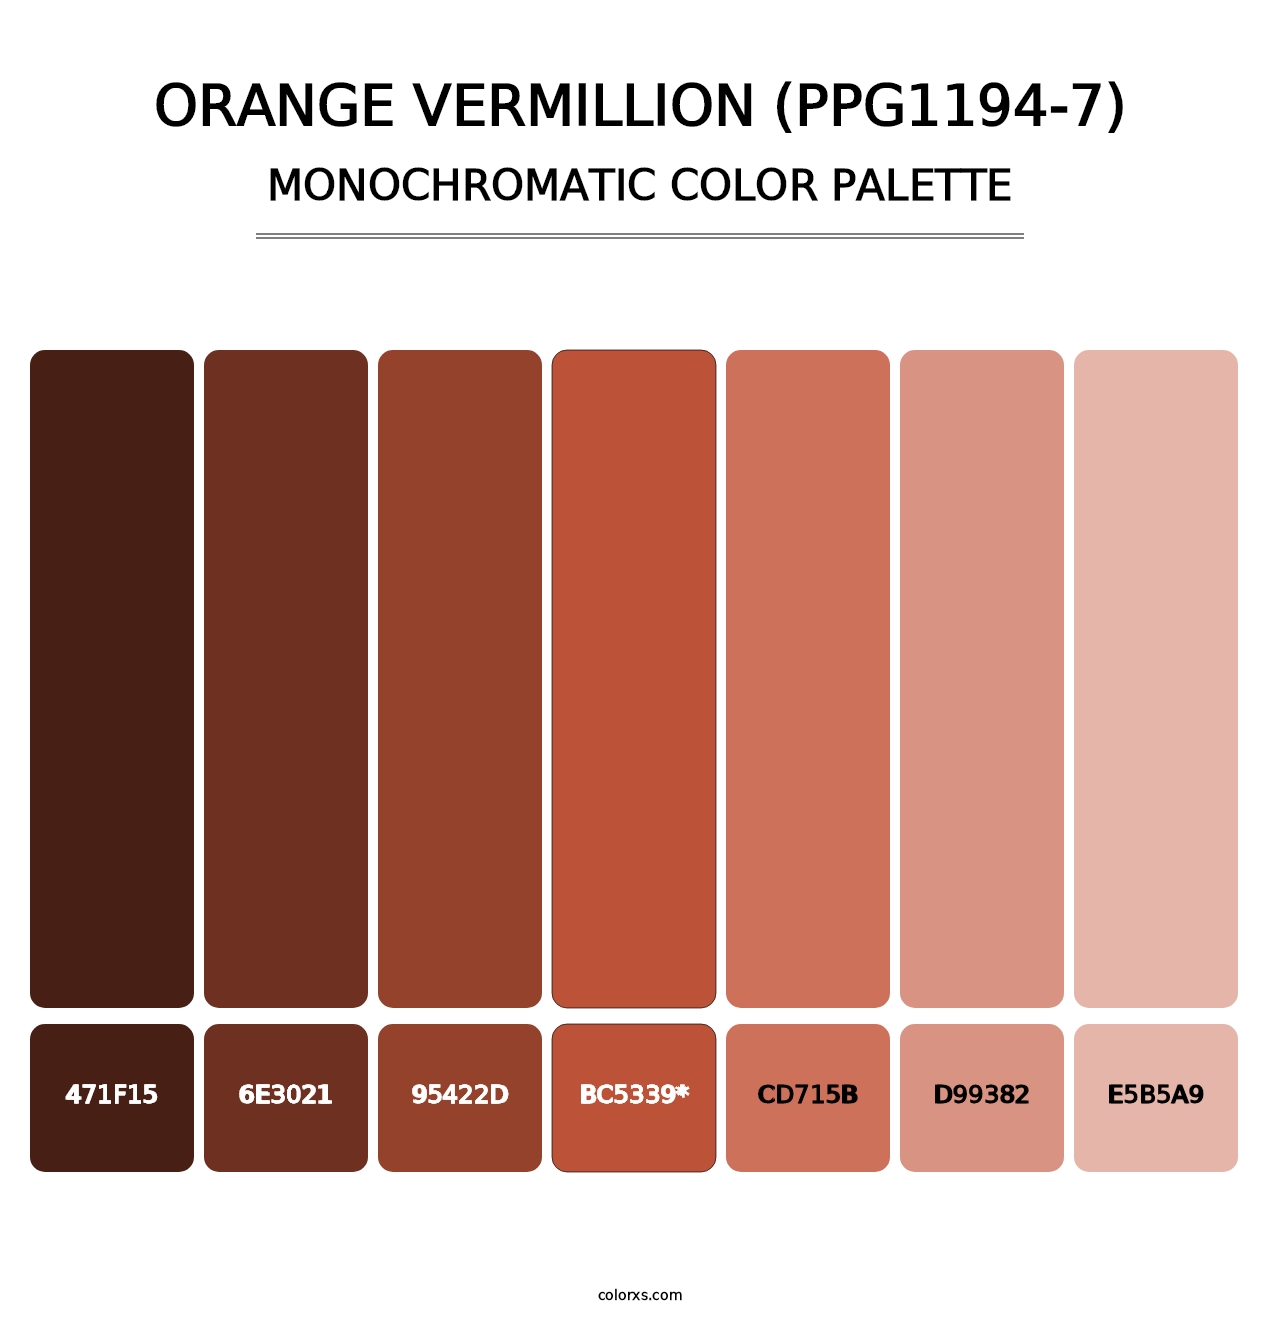 Orange Vermillion (PPG1194-7) - Monochromatic Color Palette